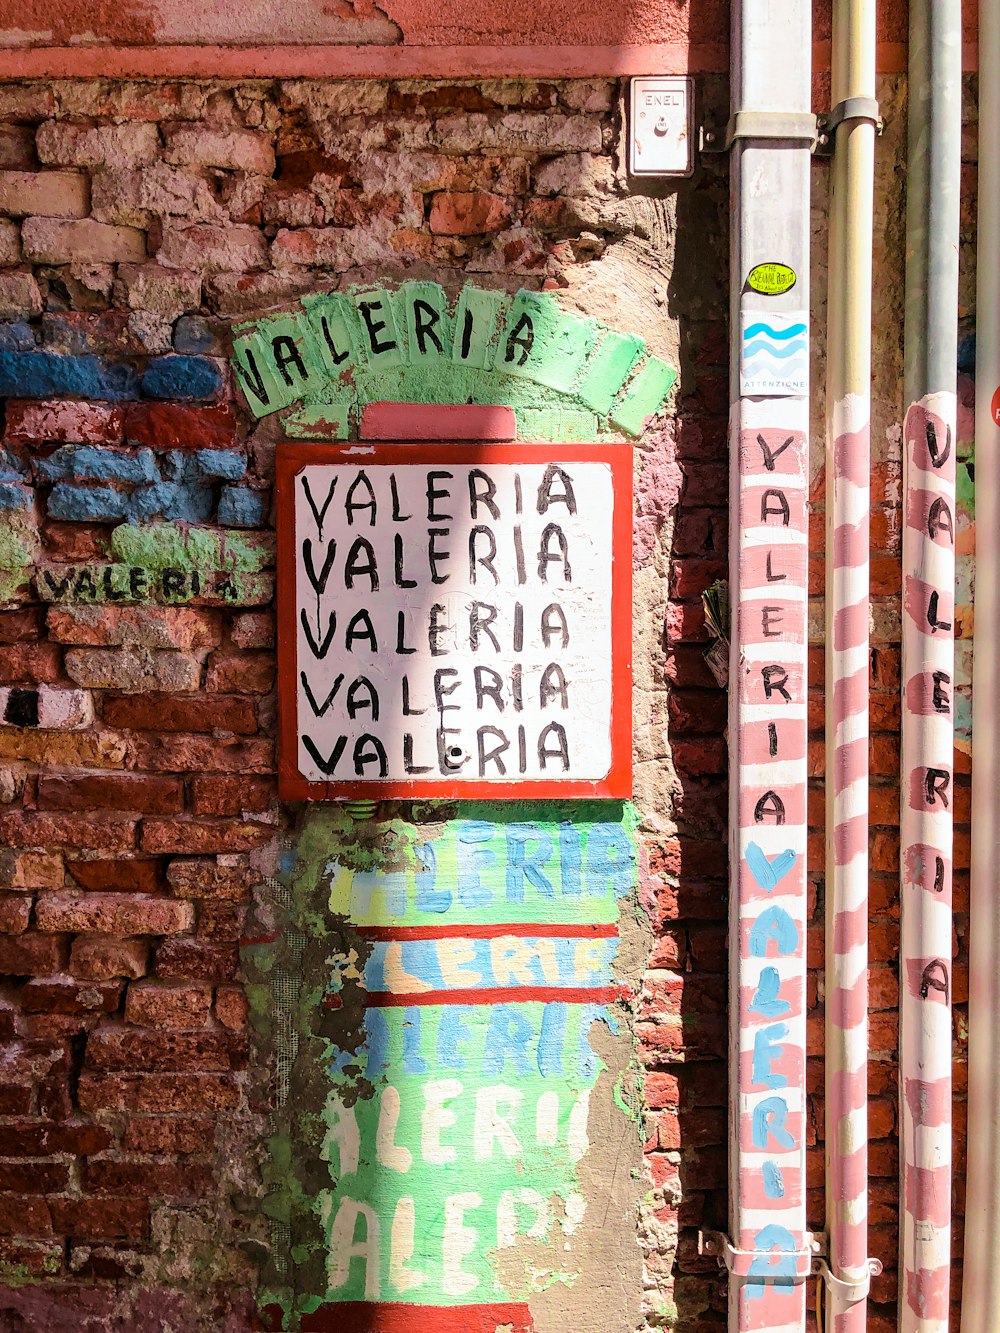 Valeria wall decor